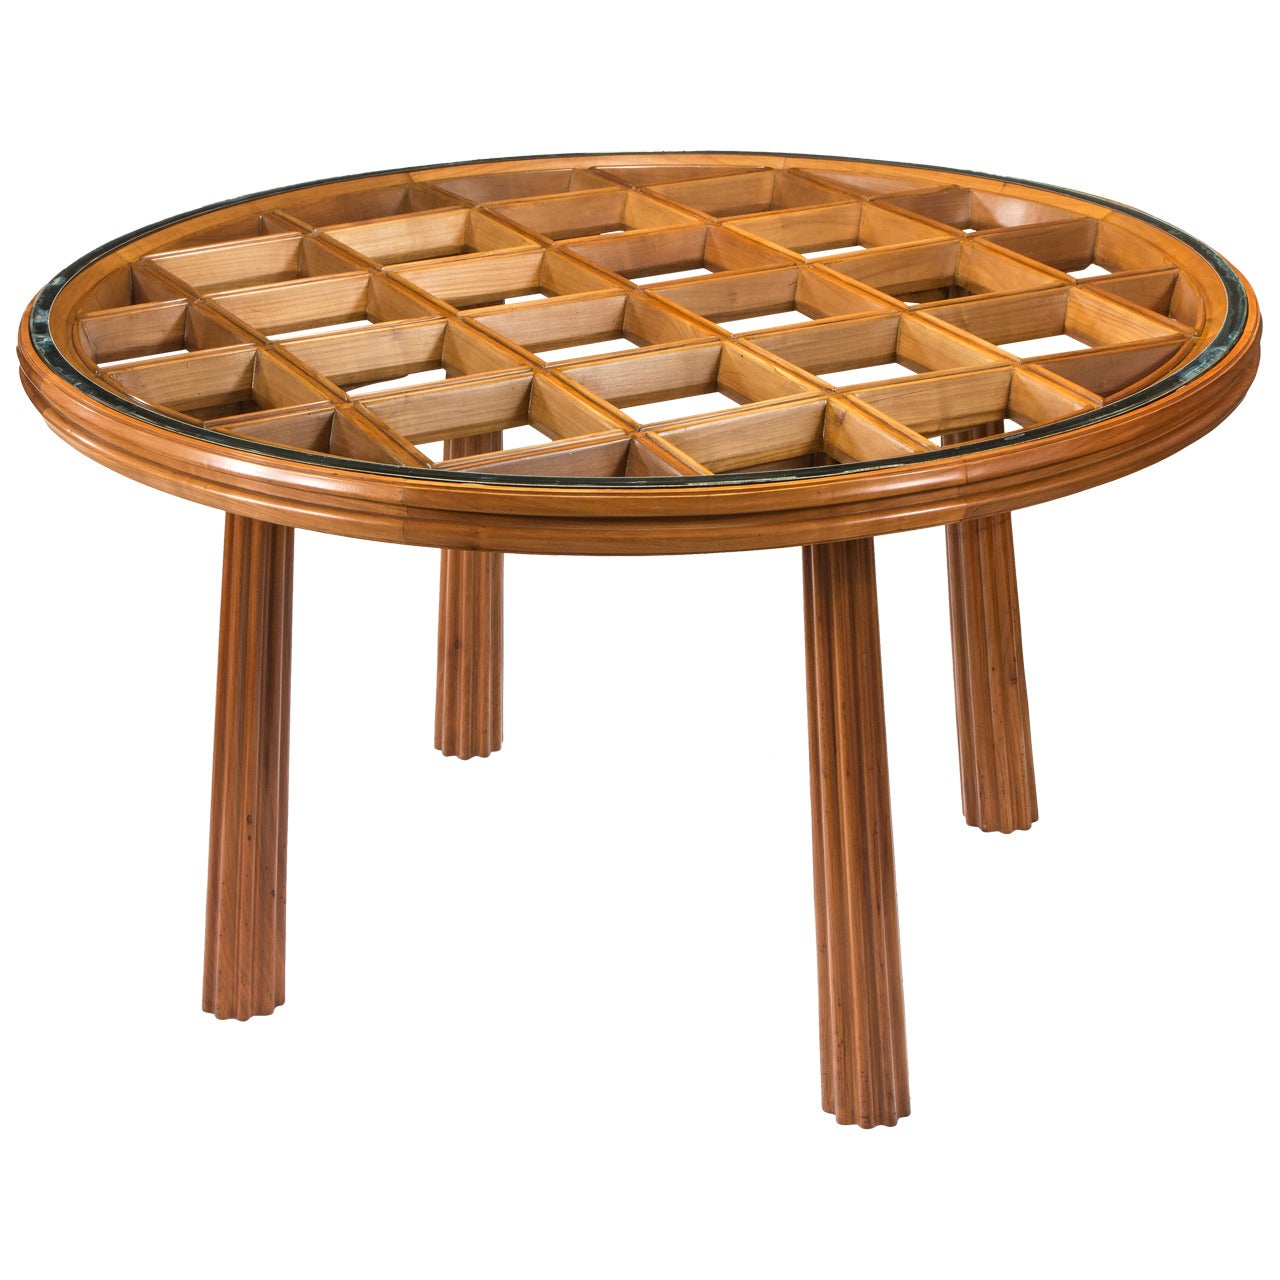 Osvaldo Borsani, A Circular Cherry Wood and Silvered Glass Table